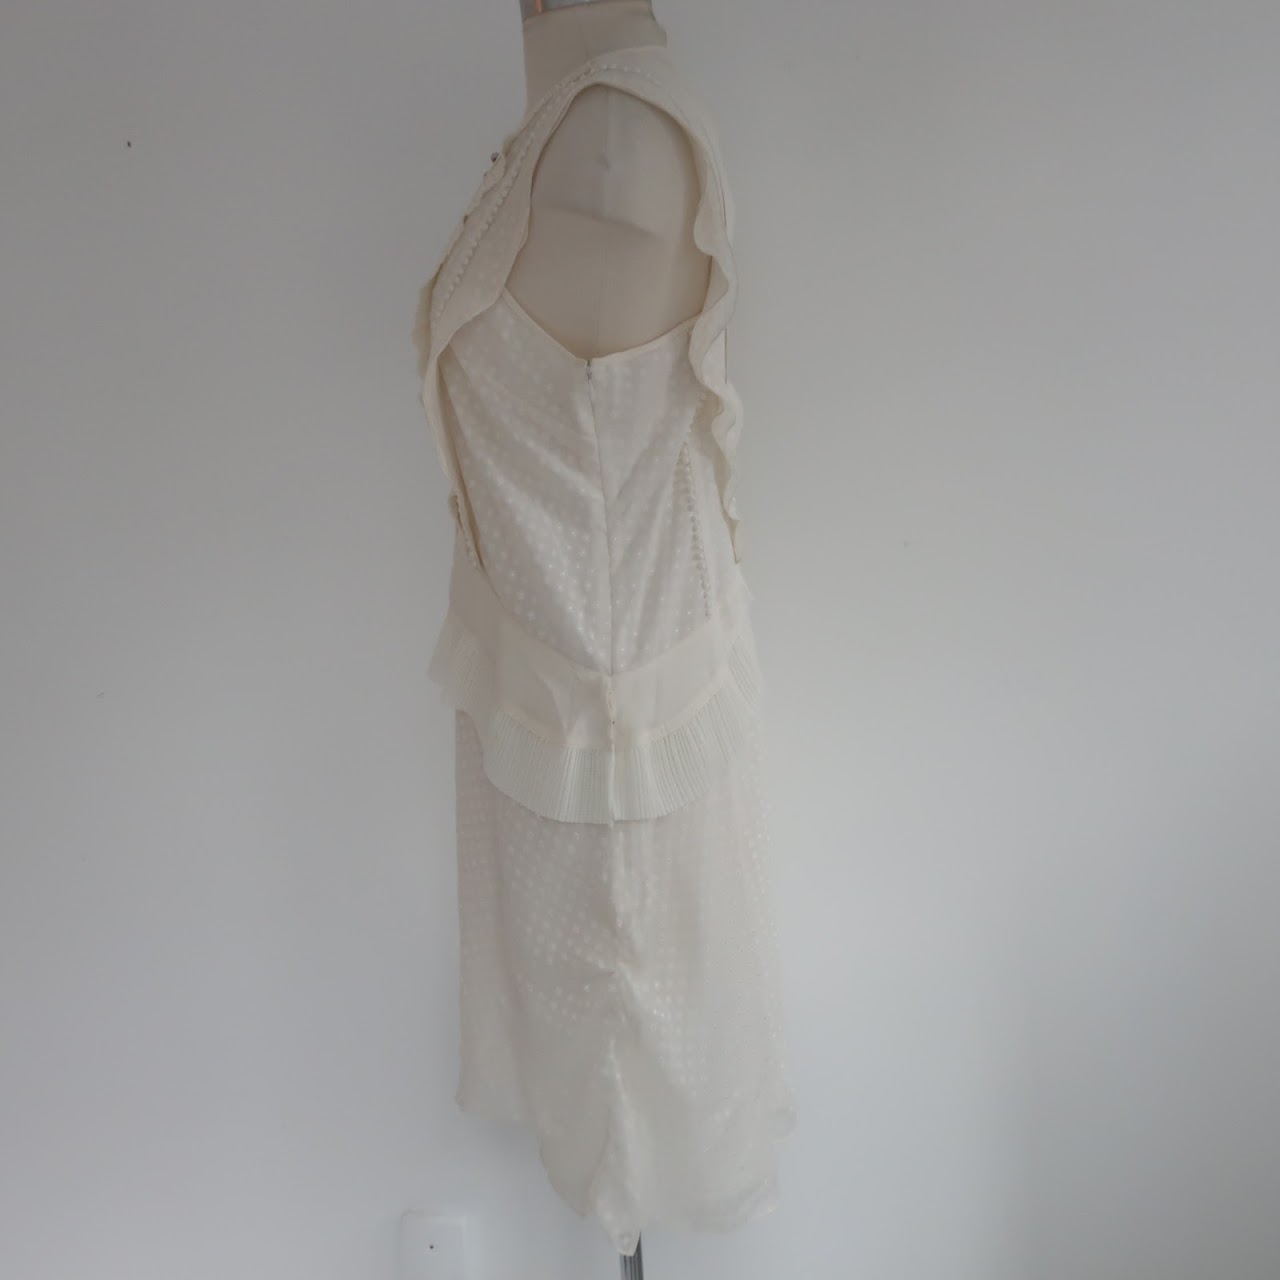 Proenza Schouler Sleeveless Ivory Dress